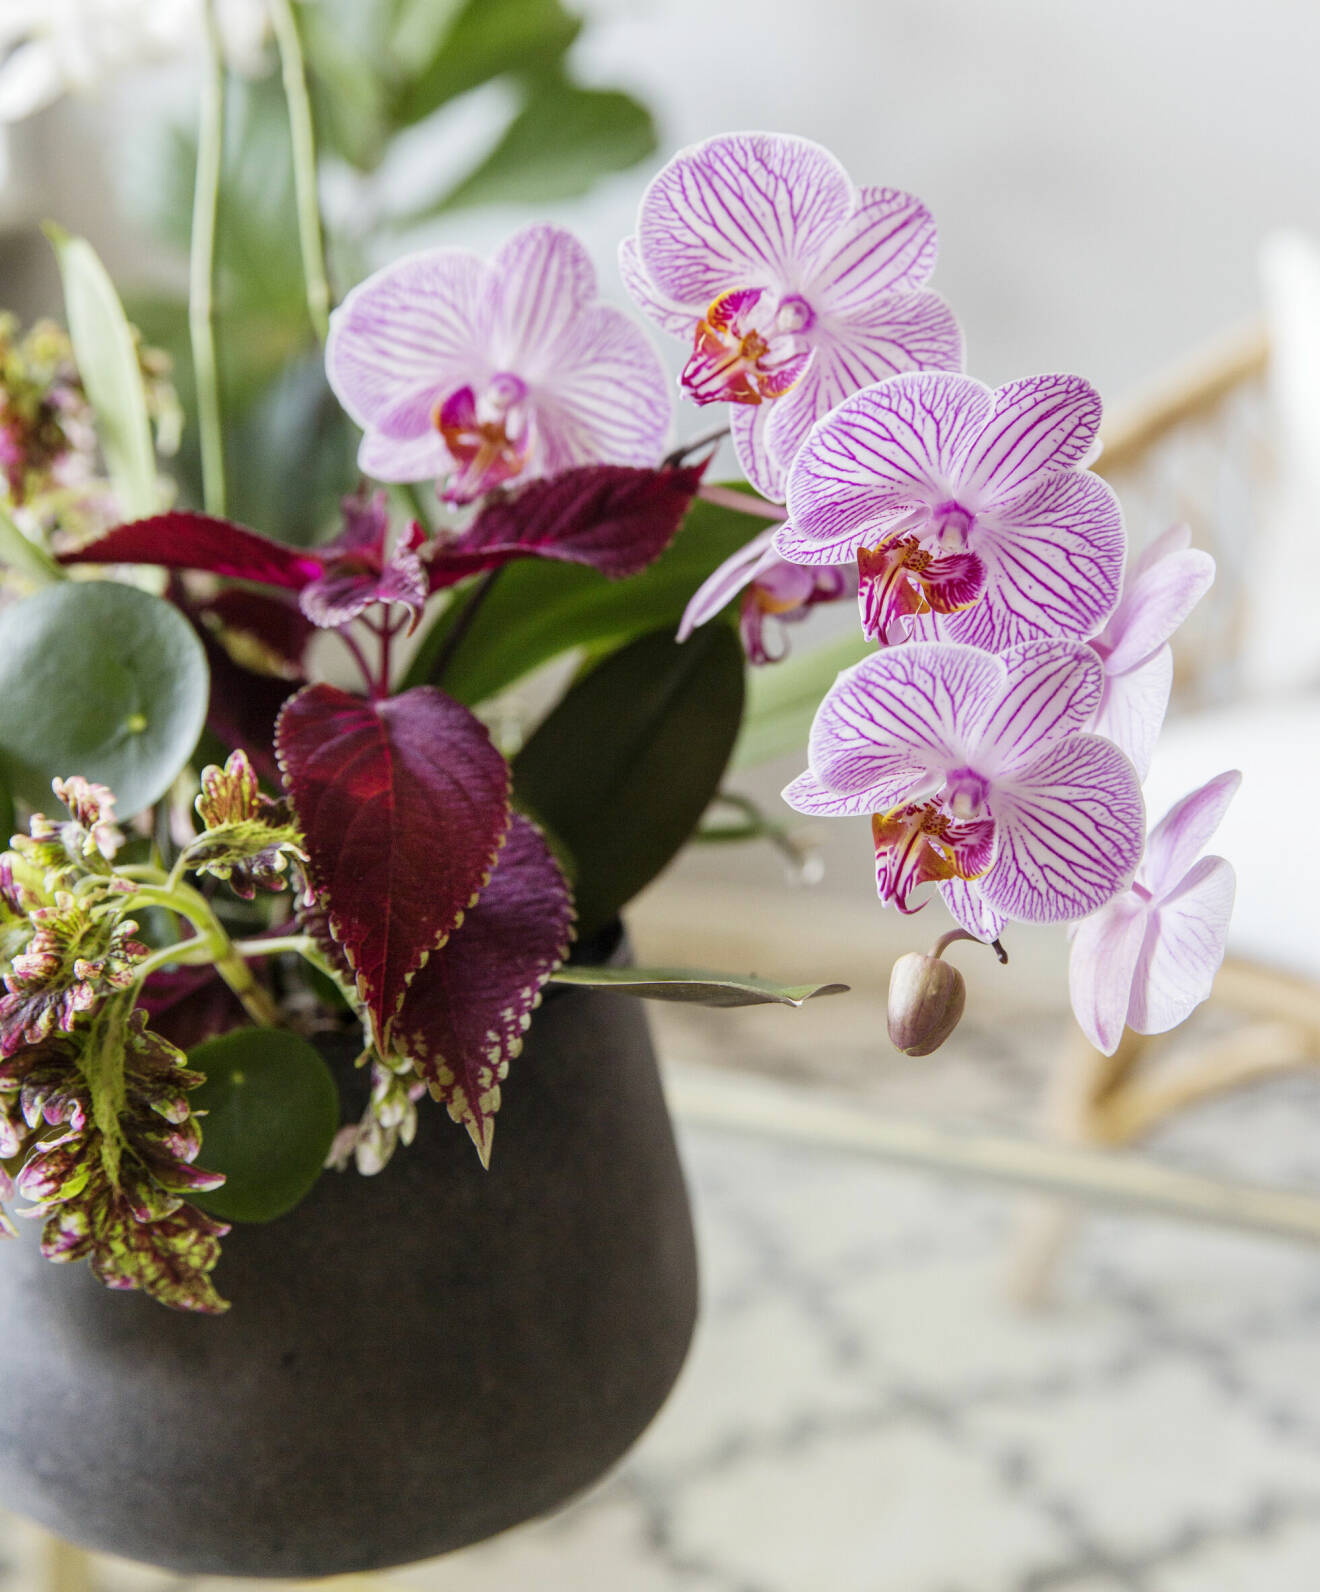 Orkidéer samplanterade med palettblad i kruka.